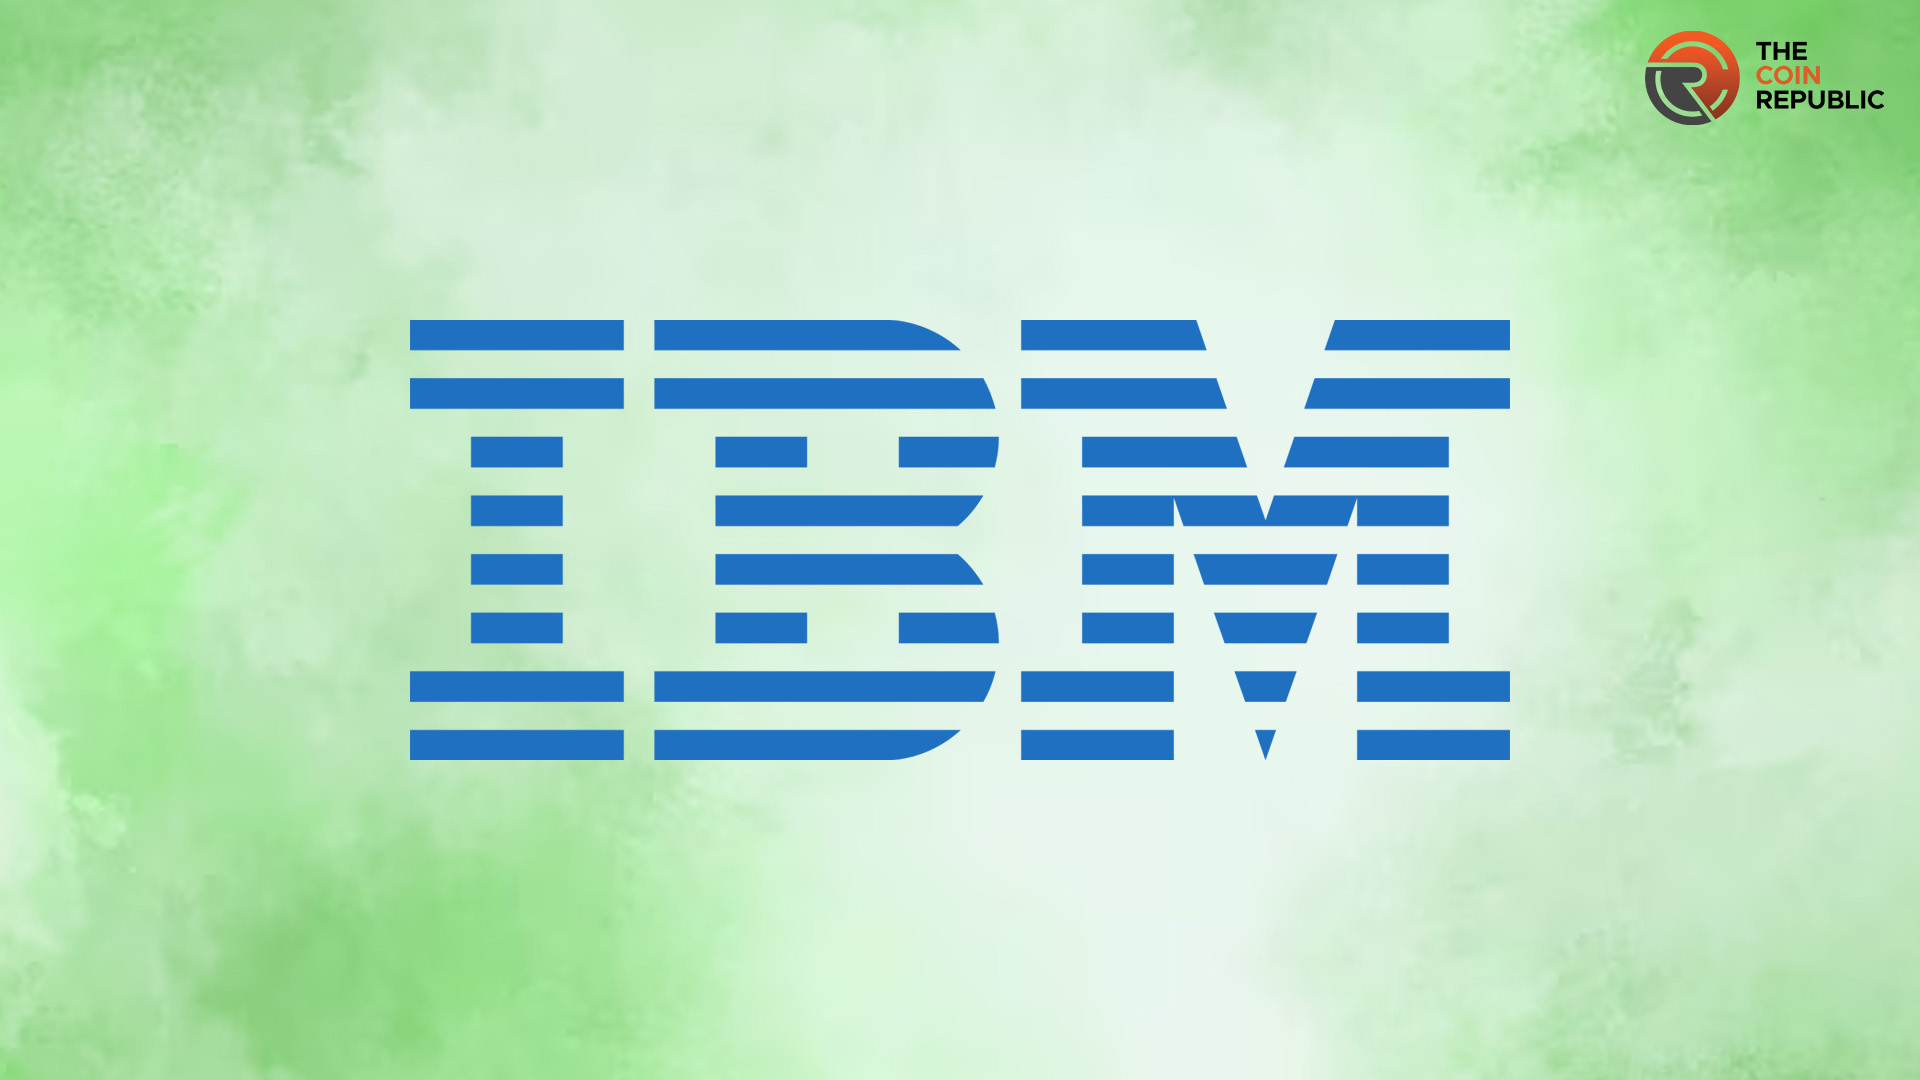 IBM Stock Price Analysis: Will IBM Stock Break the 200-Day EMA?